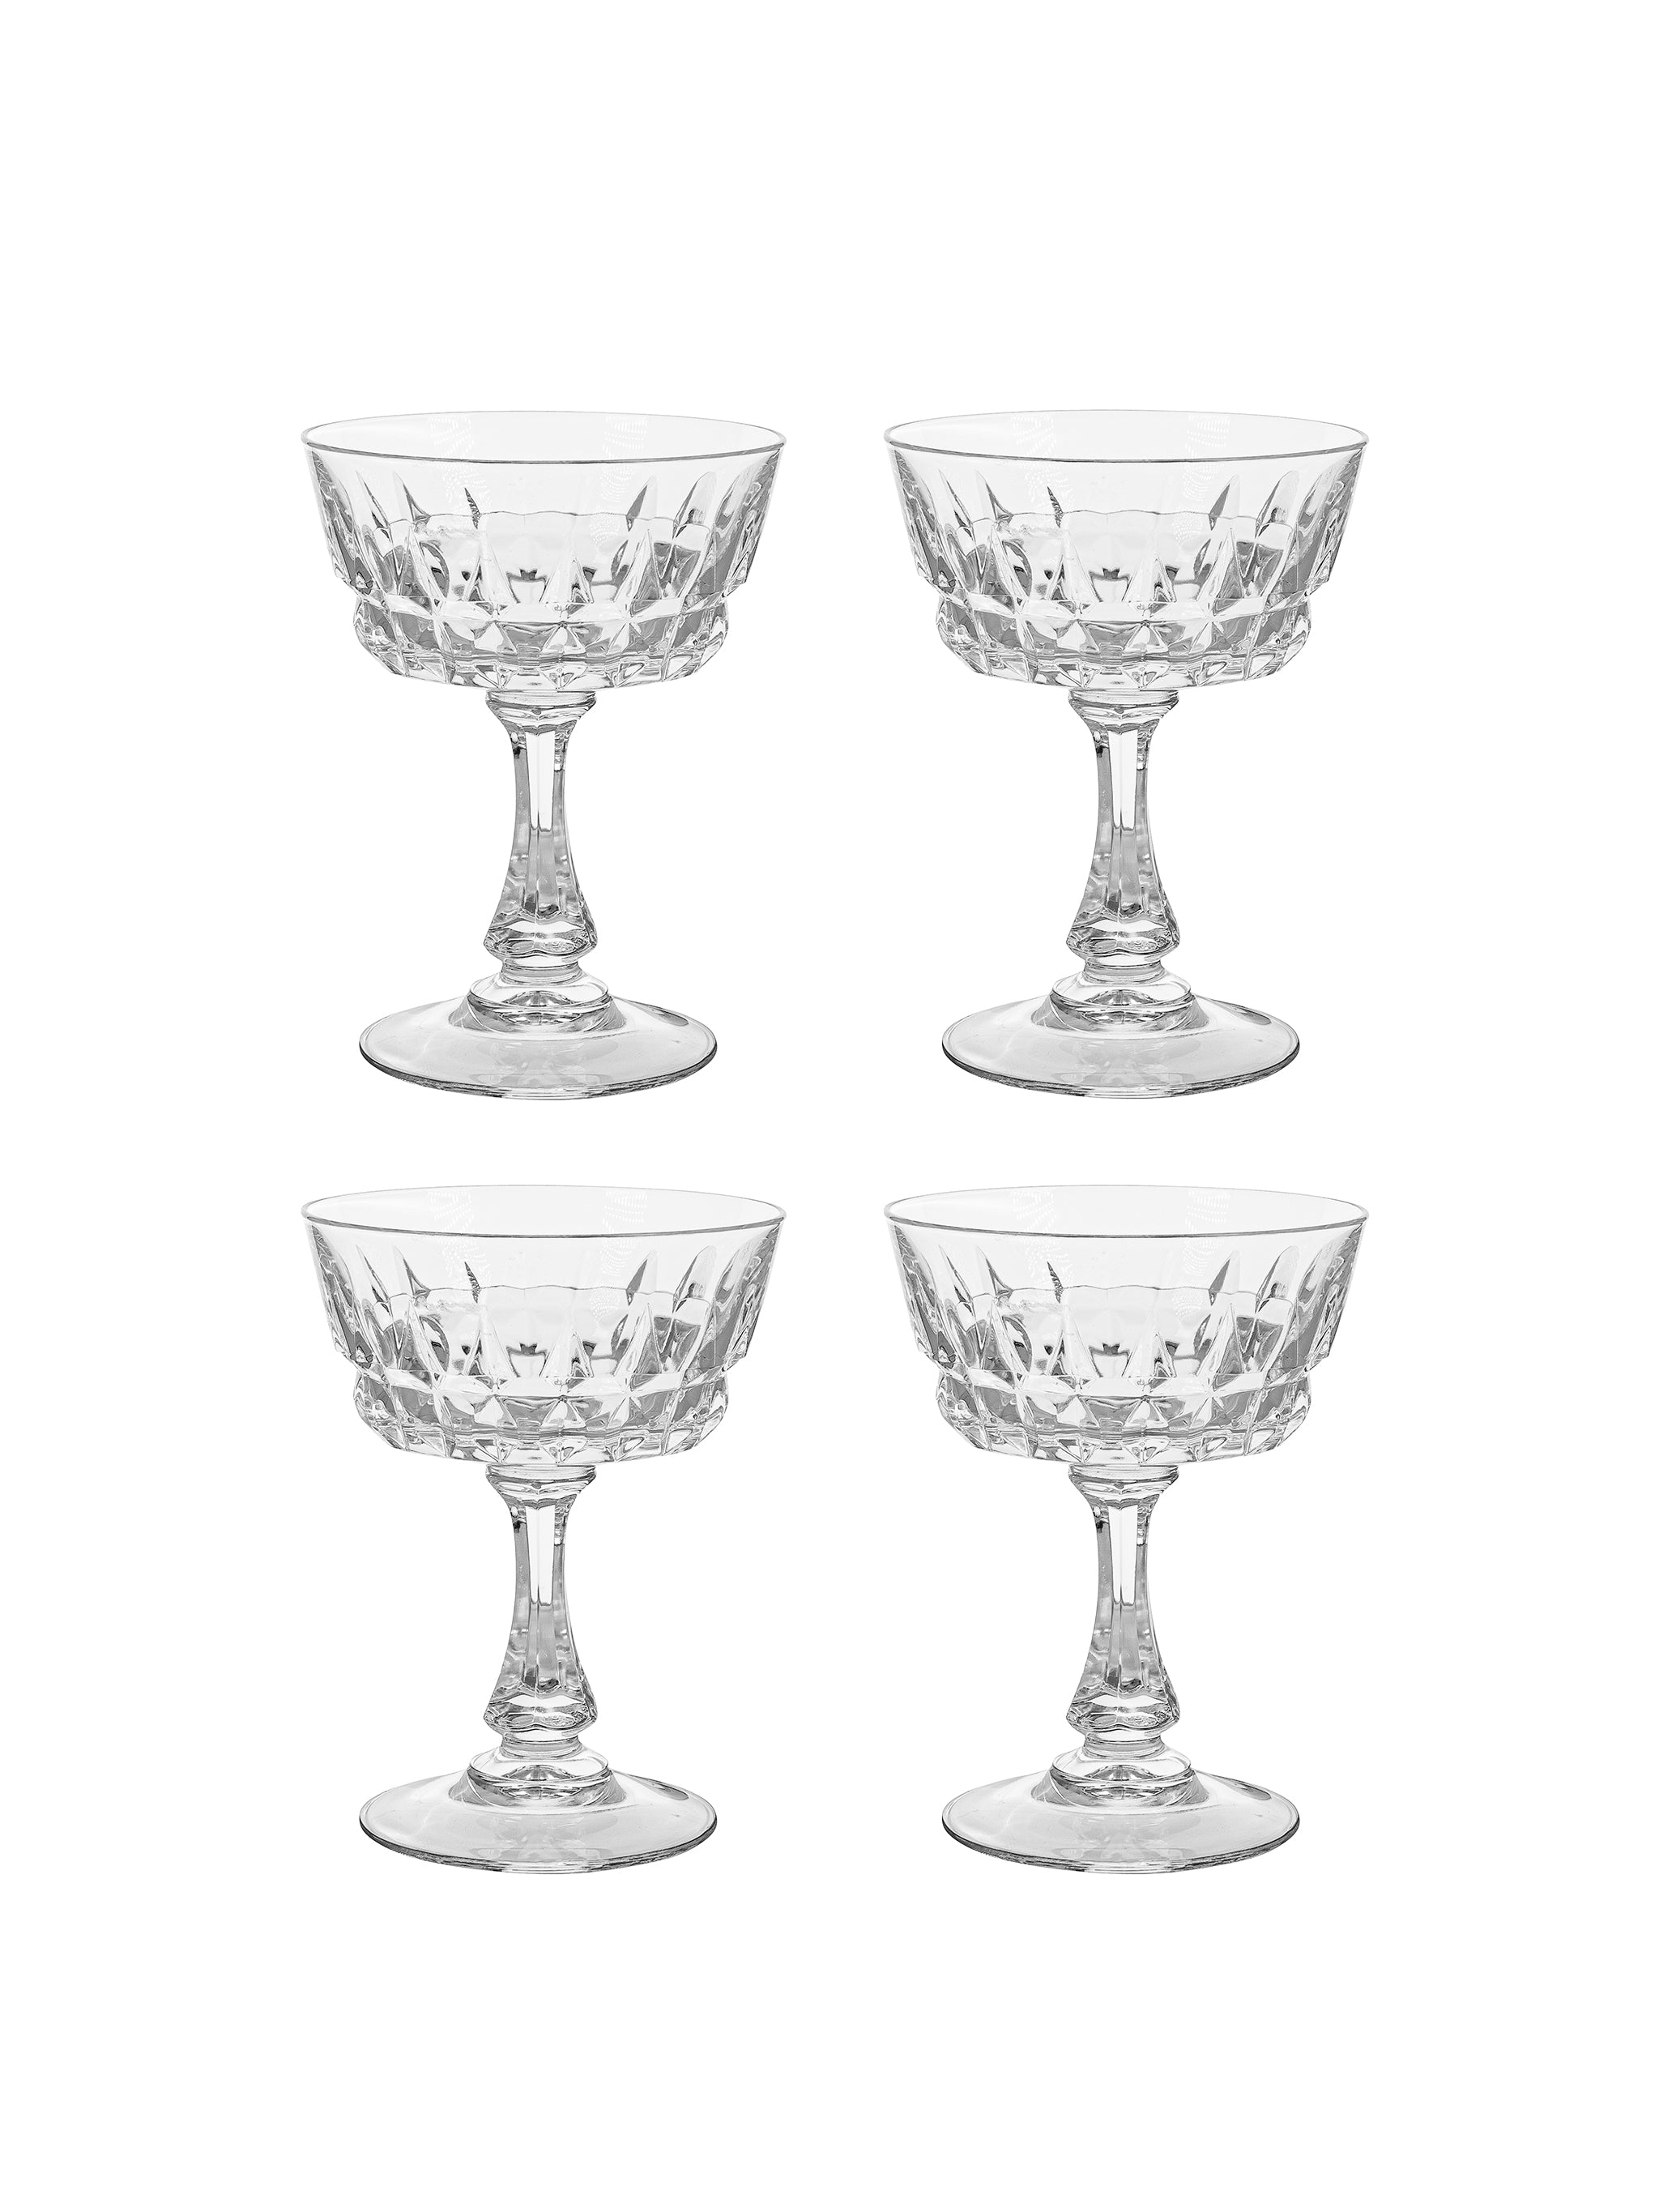 http://westontable.com/cdn/shop/products/Vintage-Retro-Cristal-d_Arques-Durand-Pompadour-Glasses-Weston-Table-SP.jpg?v=1661541977